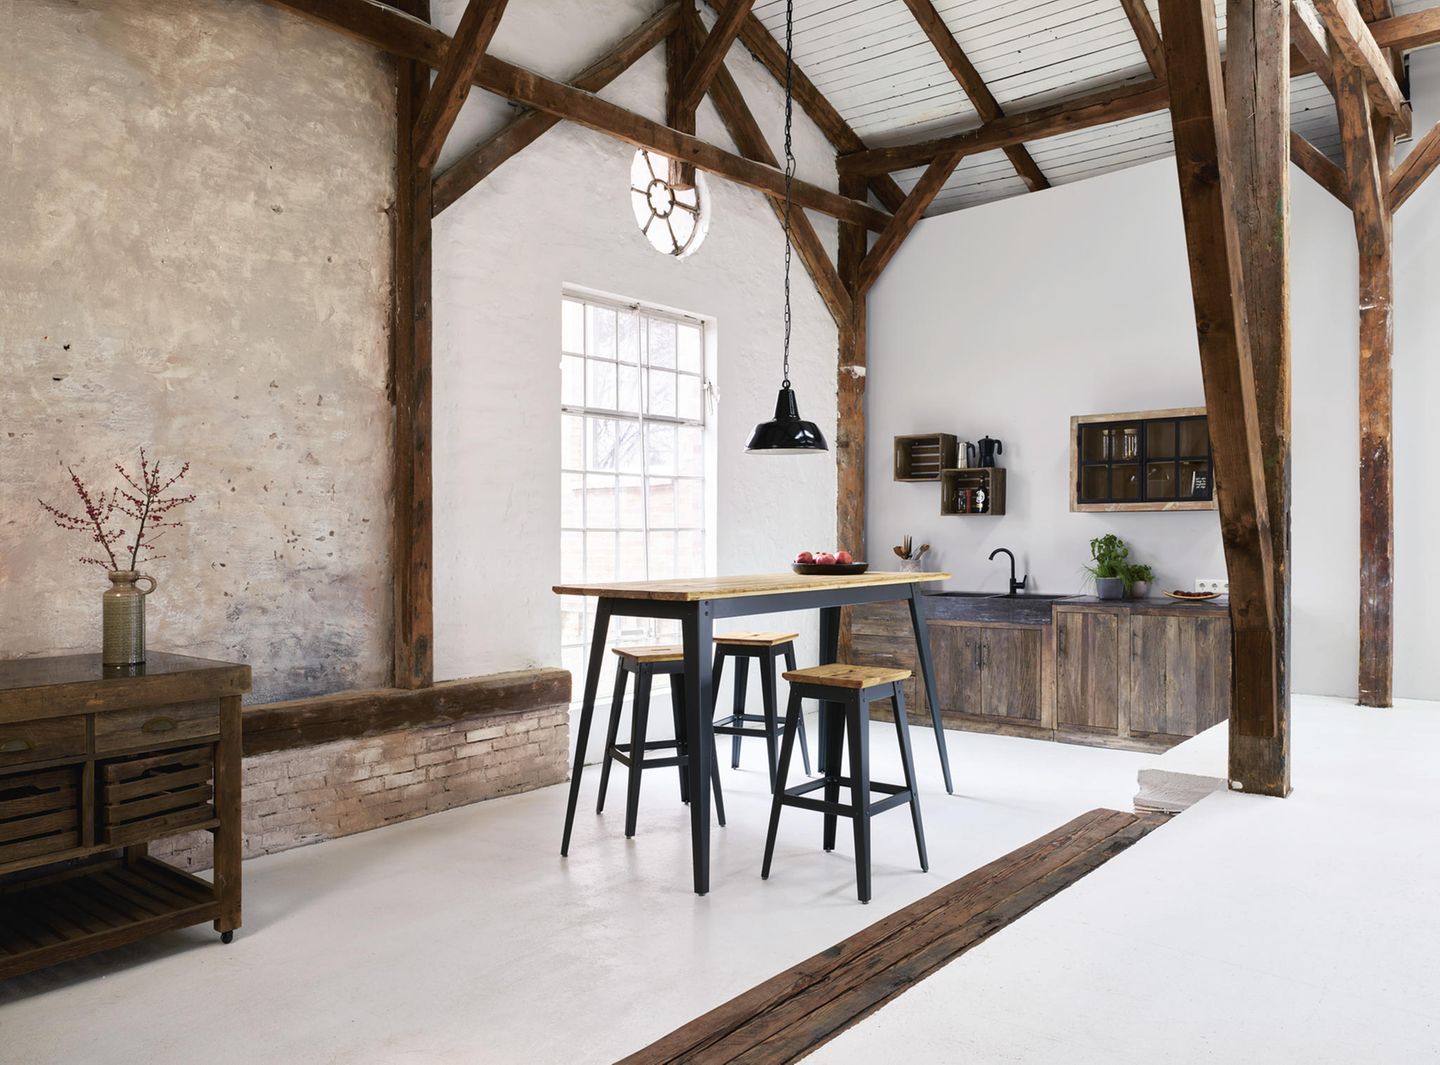 Eine dunkle Küche aus Holz mit Betonboden, dunklen Holzträgern, in der Mitte steht ein hoher Esstisch mit Hockern